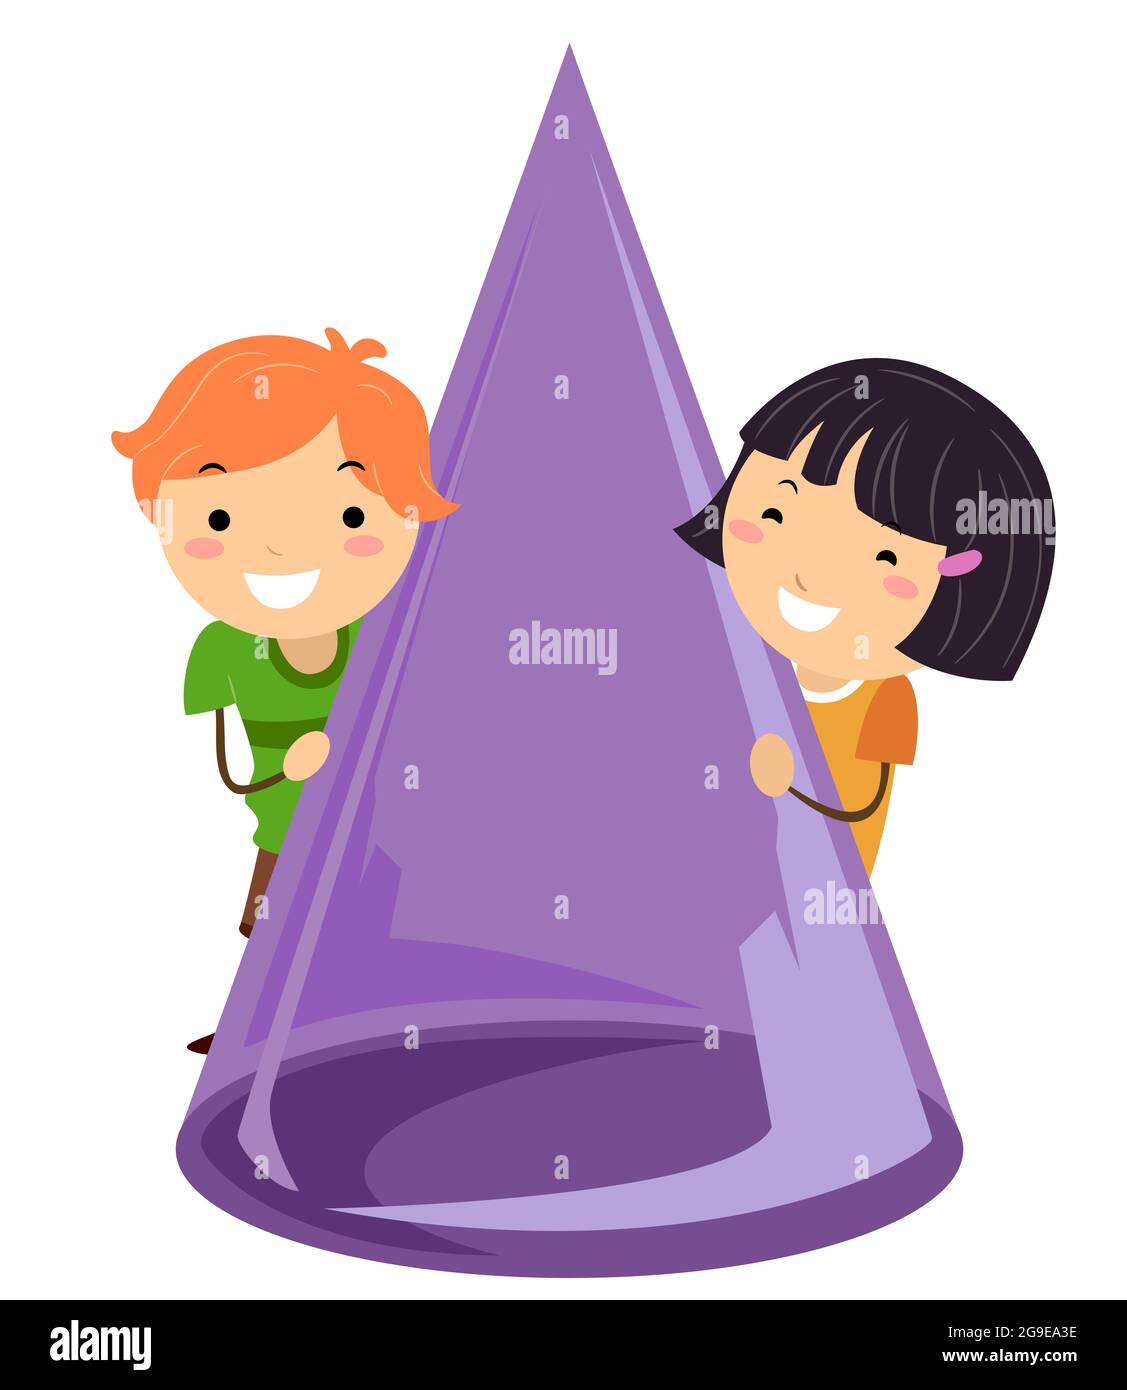 Ilustración de Stickman Kids sosteniendo un cono, una forma común 3D Foto de stock